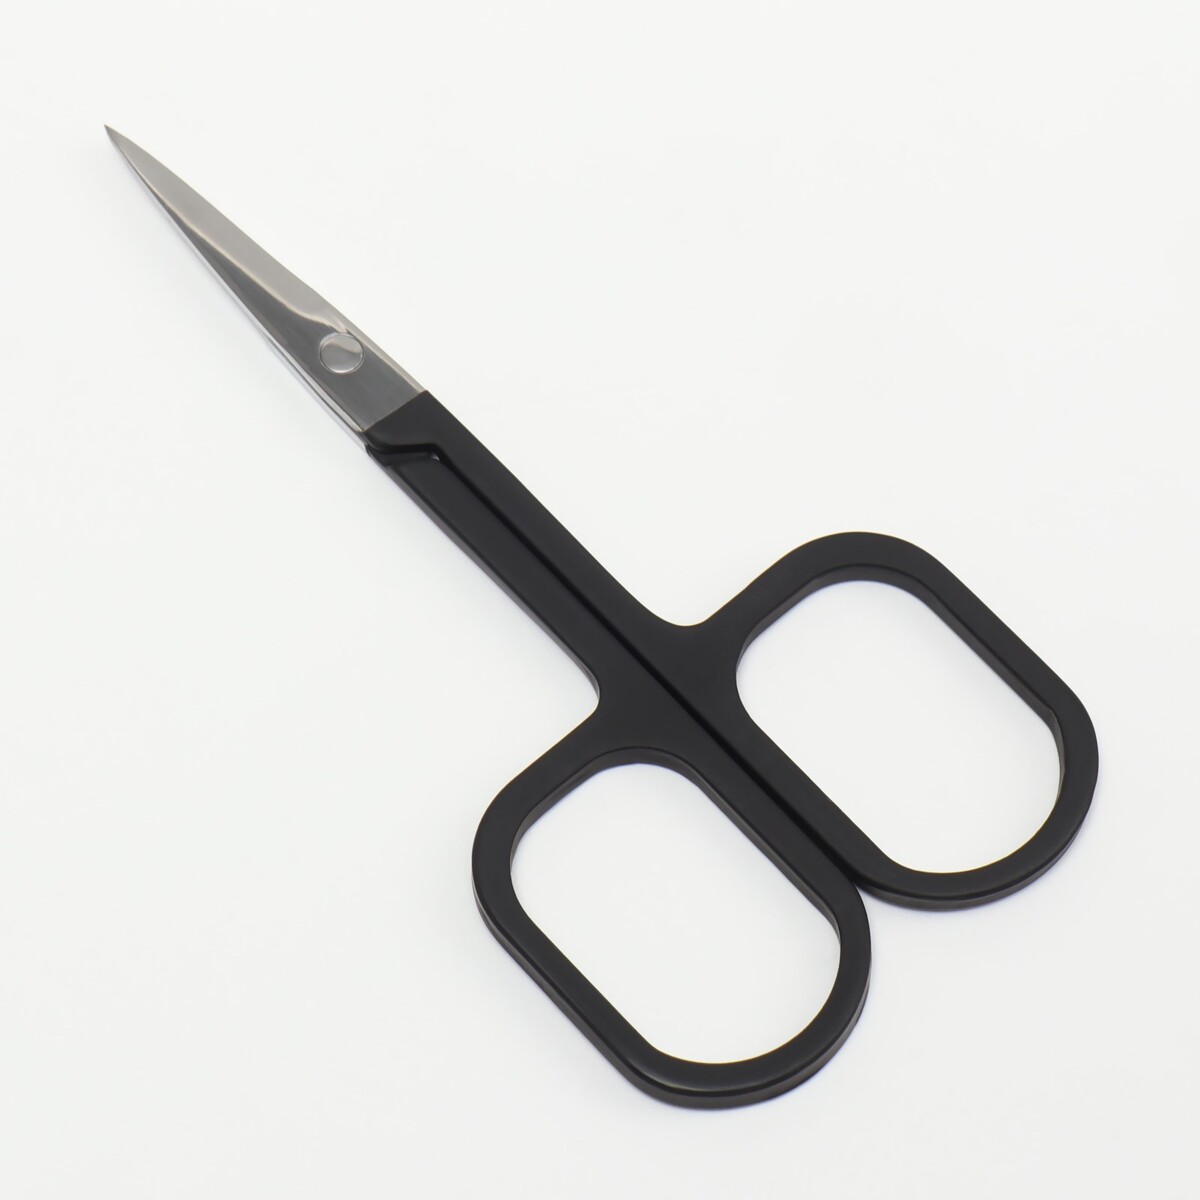 Ножницы маникюрные, узкие, прямые, с прорезиненными ручками, 9 см, цвет серебристый/черный ножницы маникюрные узкие загнутые с прорезиненными ручками 9 см серебристый